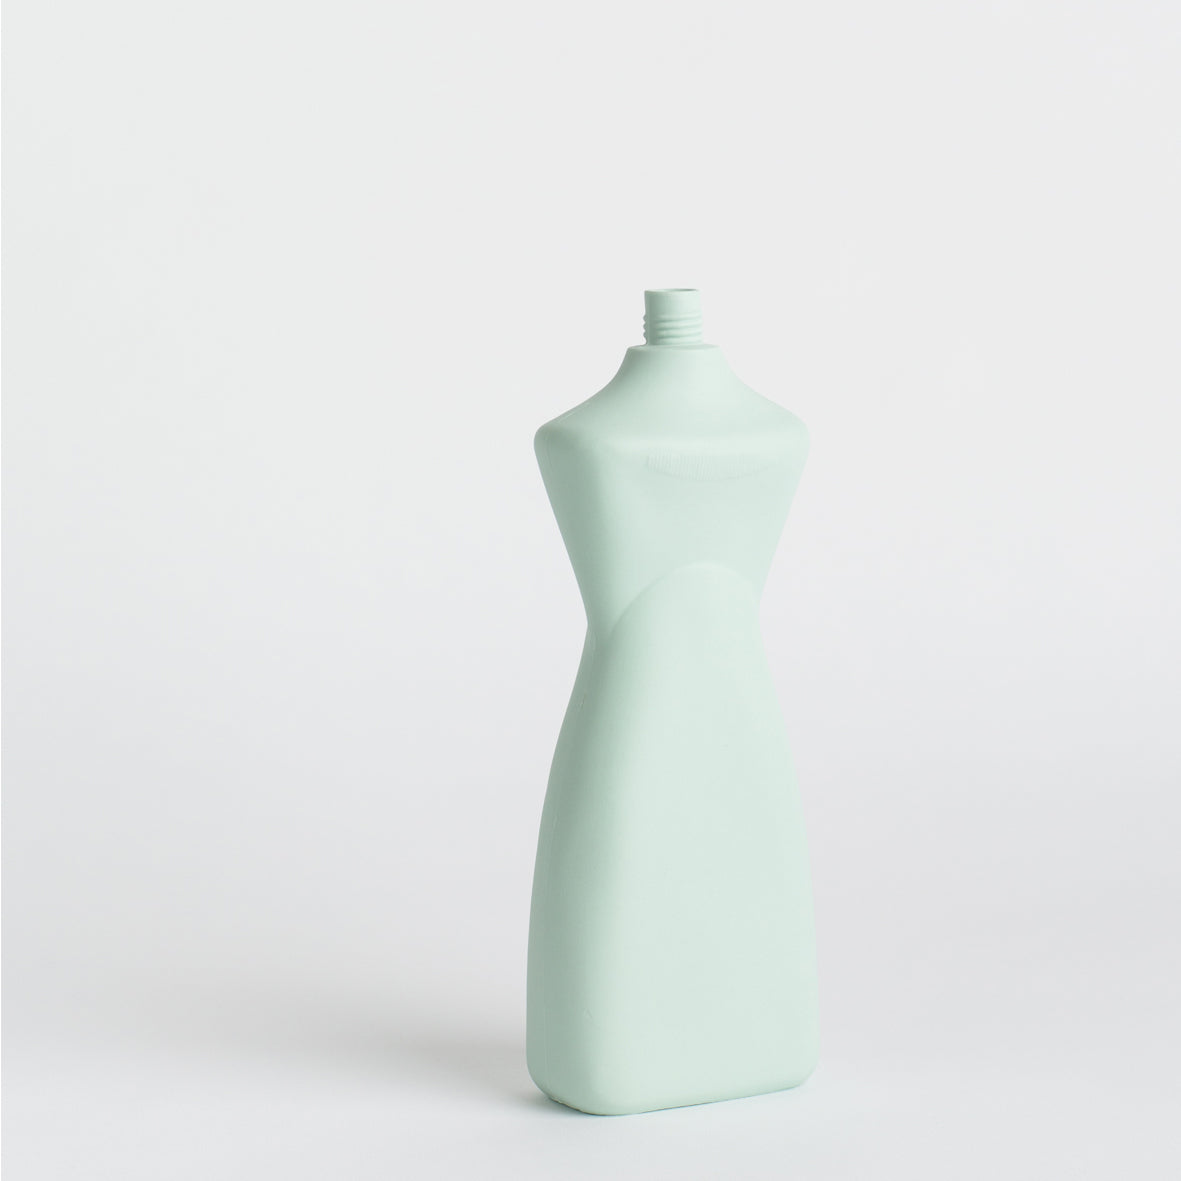 Porcelain Bottle Vase #8 - mint